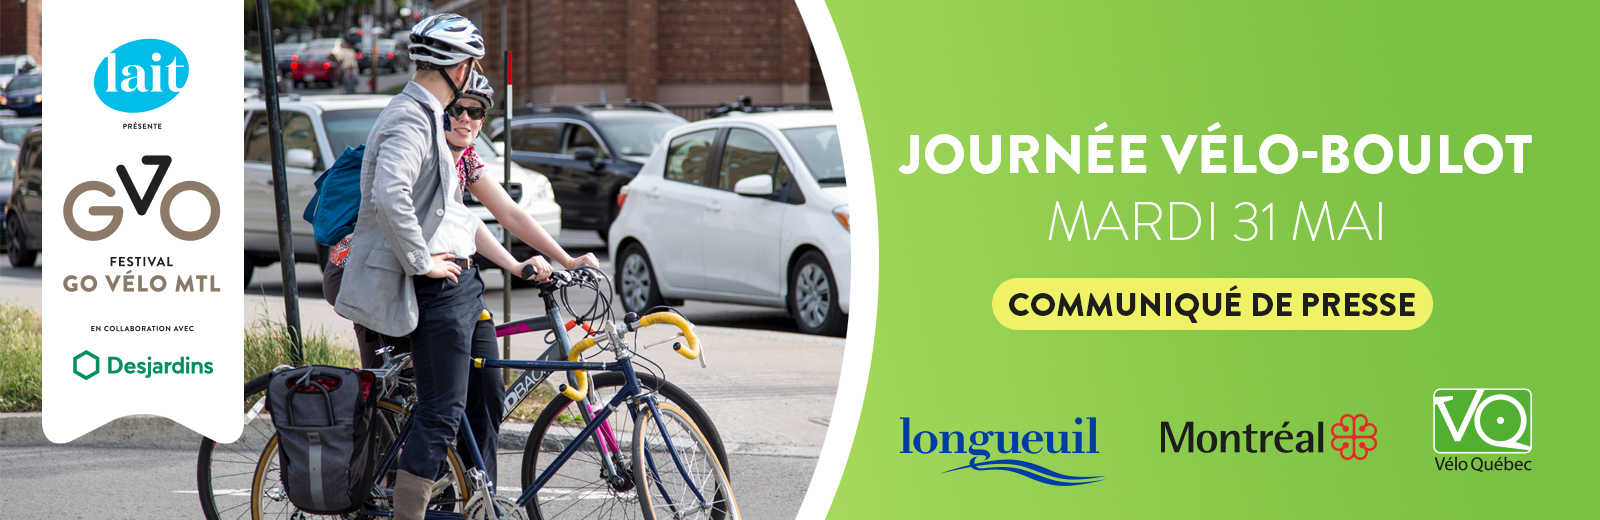 Le Festival Go vélo Montréal vous donne rendez-vous demain à la Journée vélo-boulot!